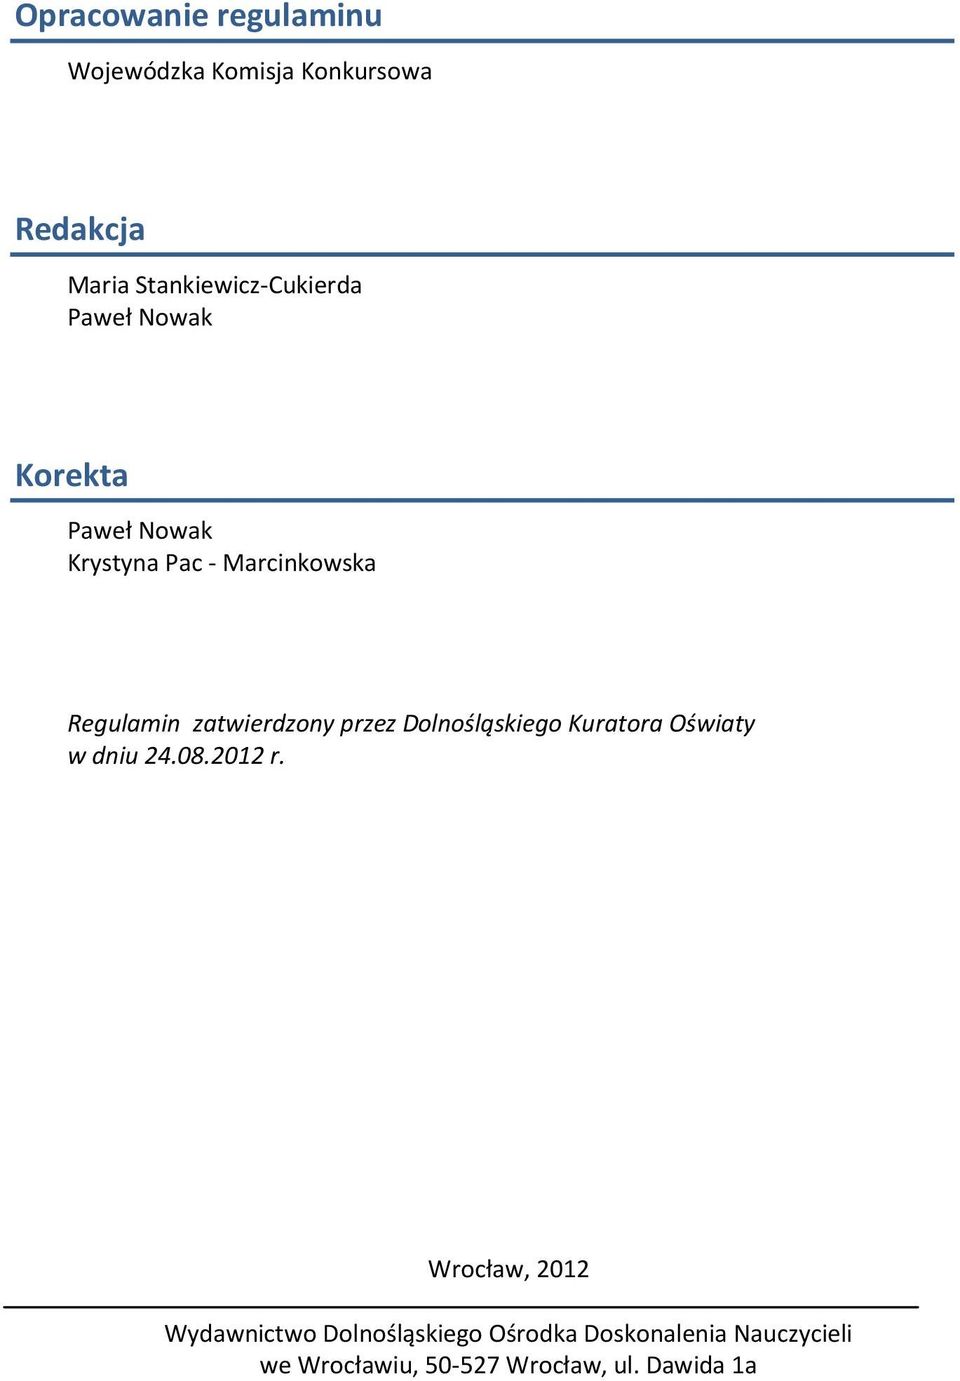 Regulamin zatwierdzony przez Dolnośląskiego Kuratora Oświaty w dniu 24.08.2012 r.